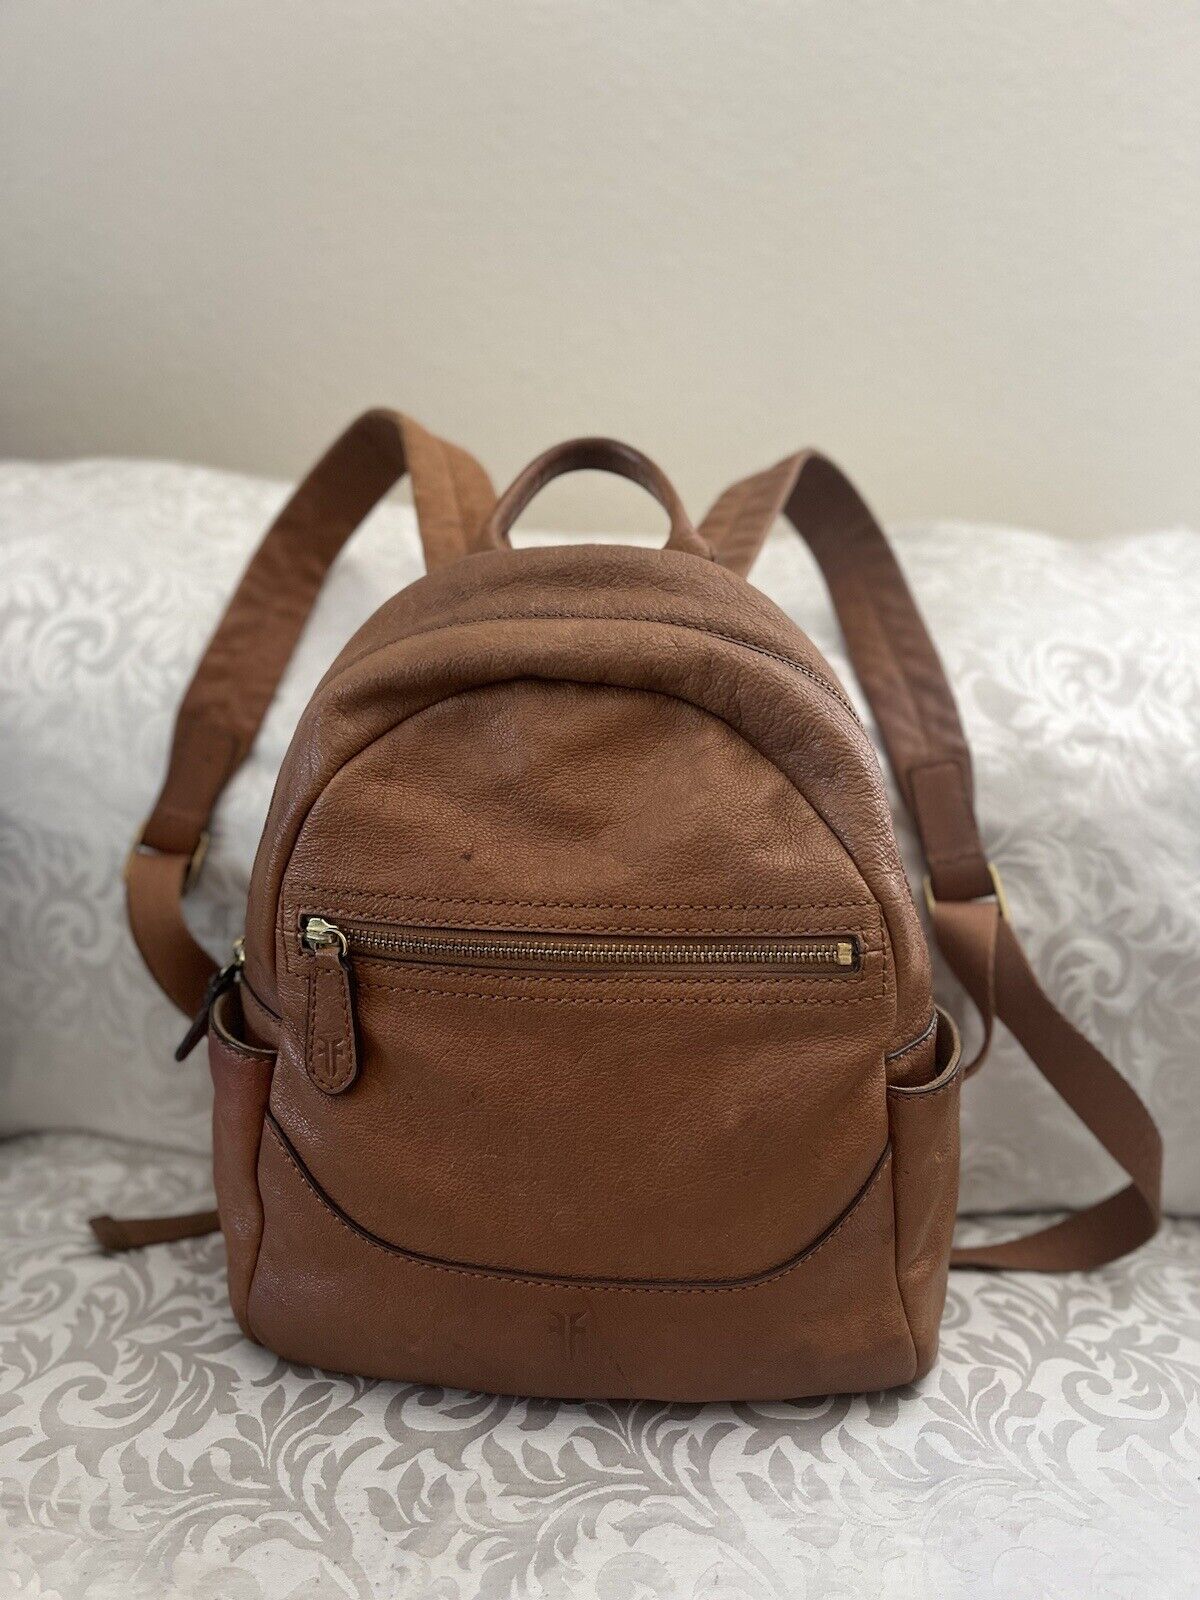 Frye Backpack Bag Brown Leather Women Unisex Medi… - image 1